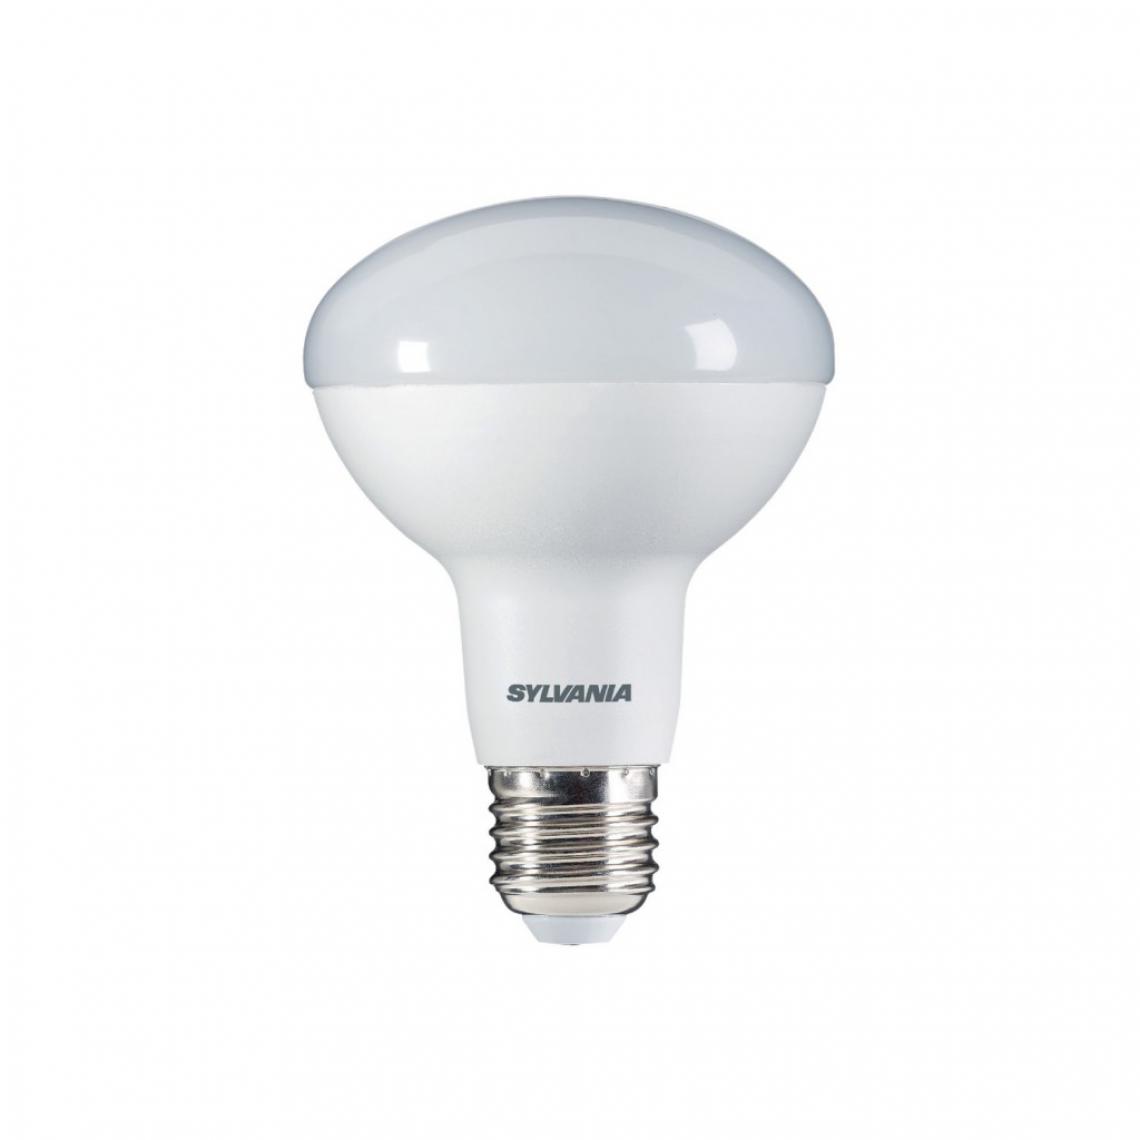 Alpexe - Ampoule LED E27 R80 9 W 806 lm 3000 K - Ampoules LED